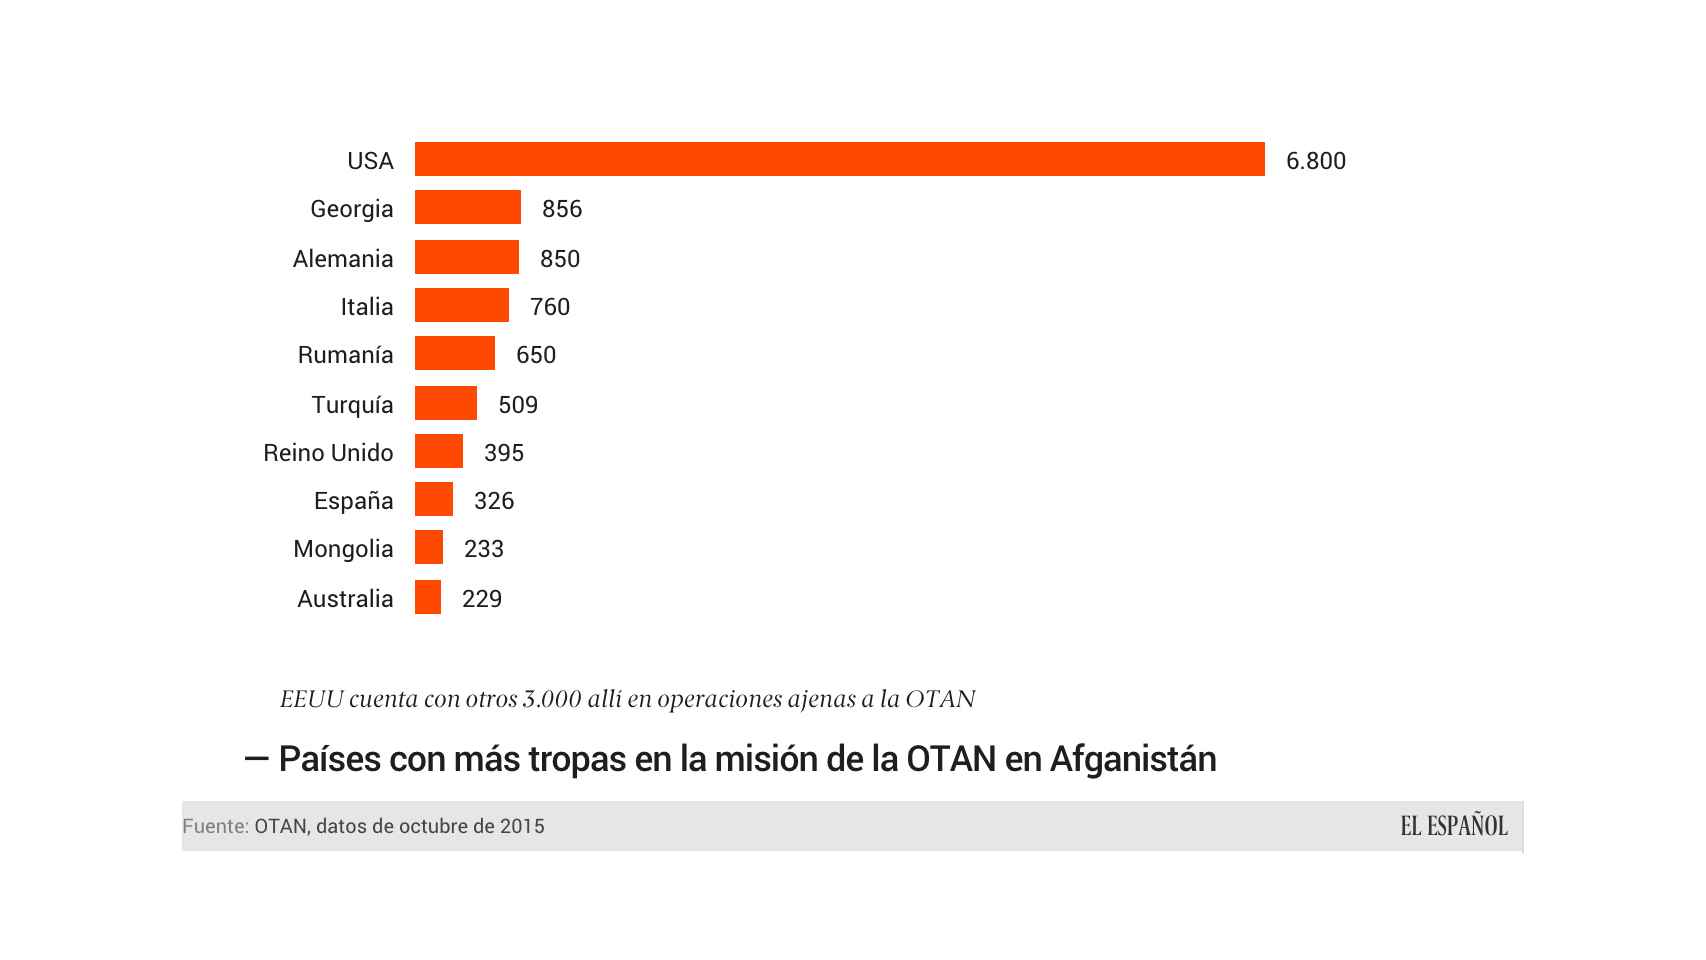 Los 10 países que más soldados tienen en la misión afgana de la OTAN.